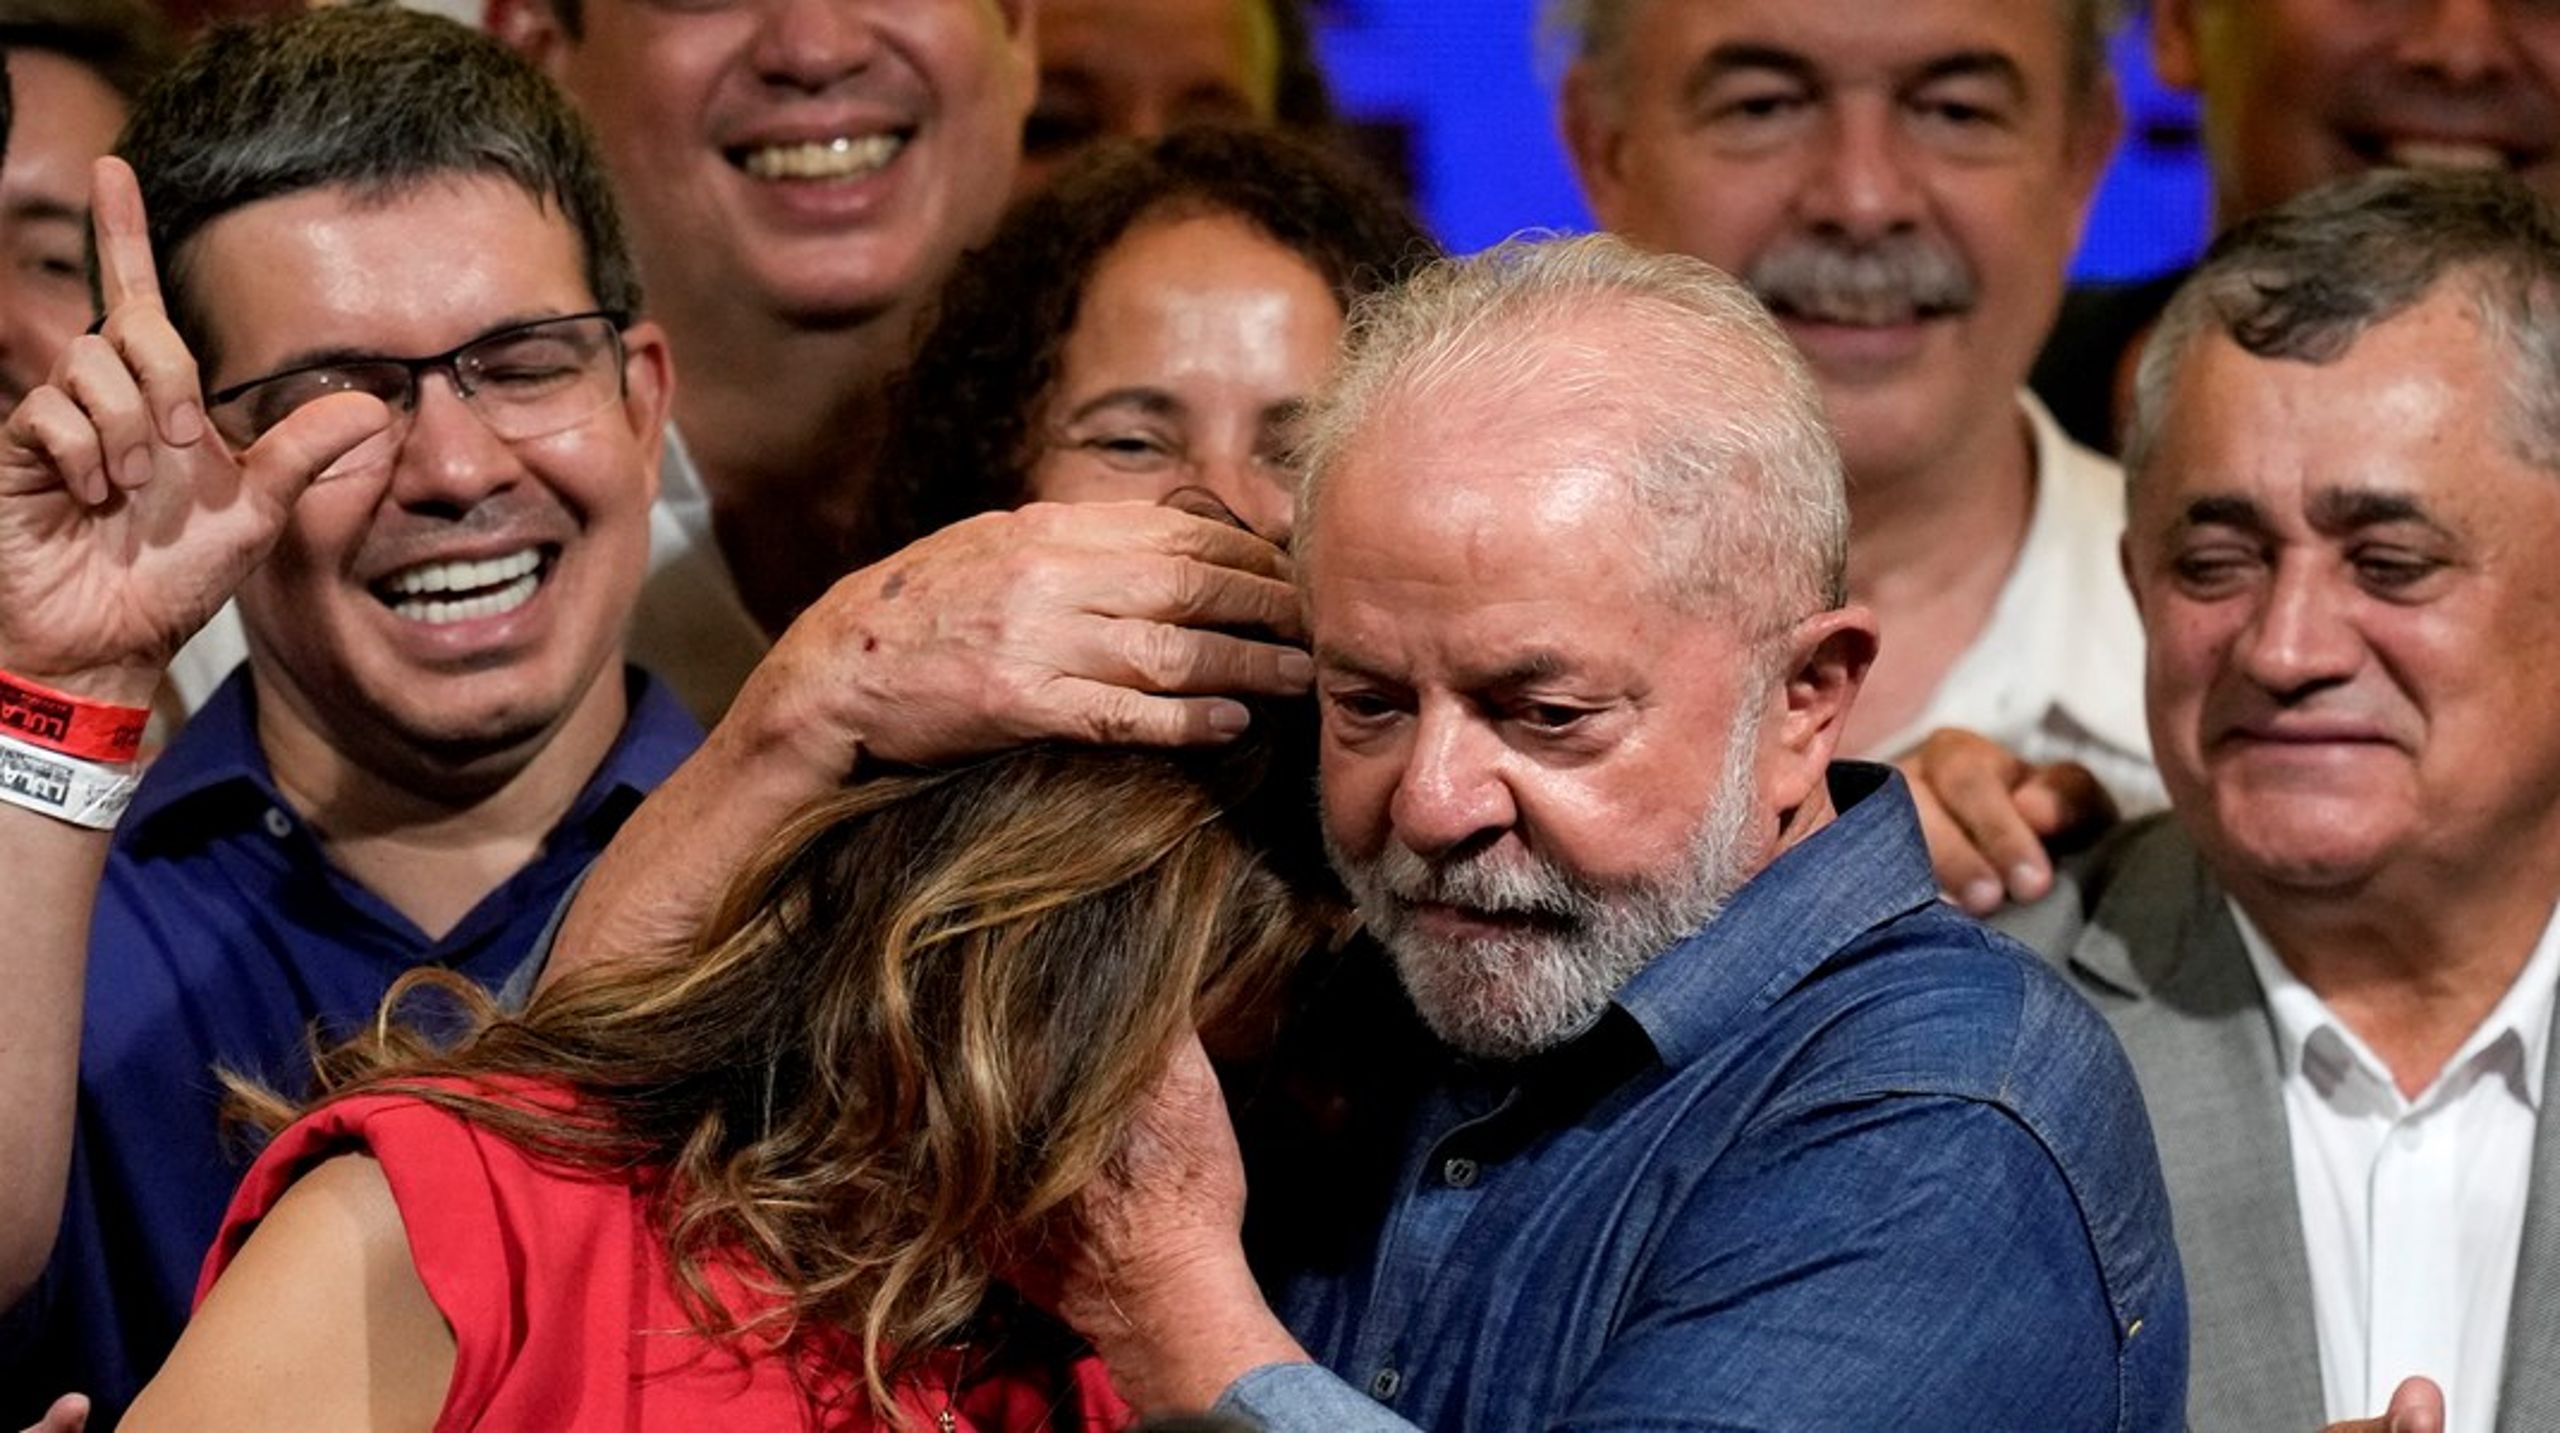 En rørt Luiz Inacio Lula da Silva omfavner sin kone&nbsp;Rosangela etter å ha slått motkandidaten Jair Bolsonaro i Brasils presidentvalg søndag.